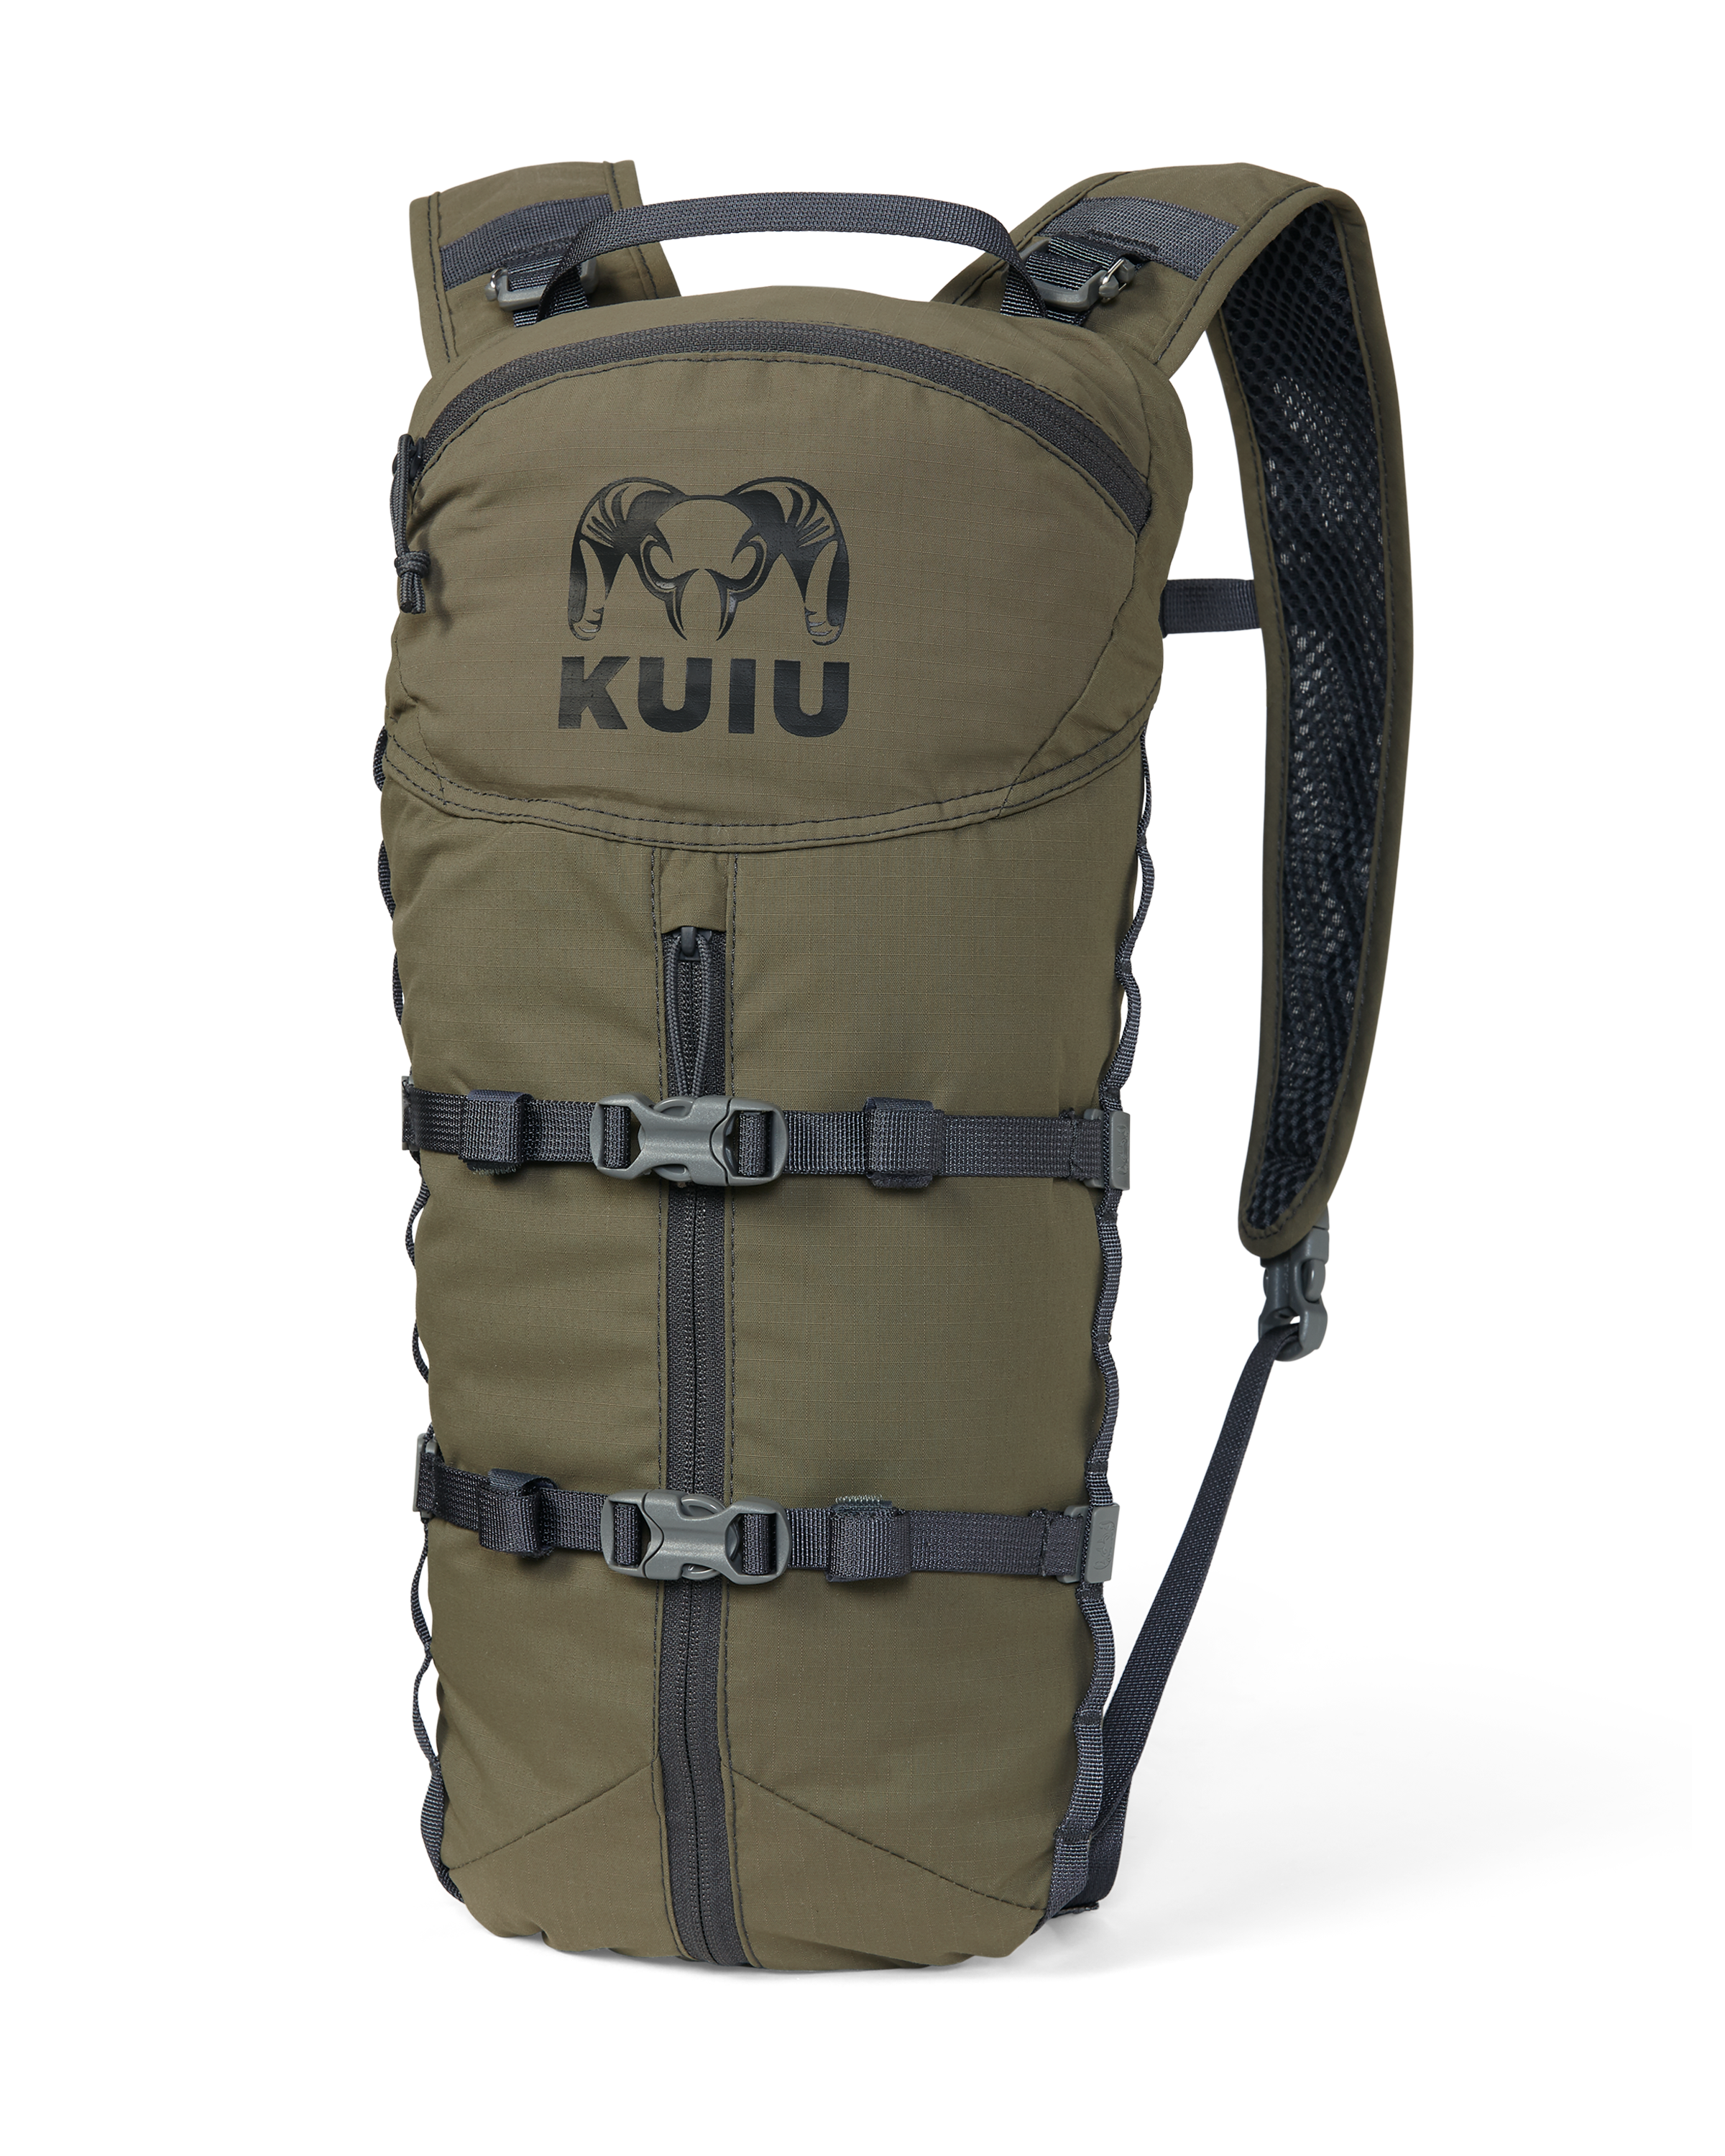 KUIU Stalker 500 Day Bag Pack PRO in Ash Hunting Pack